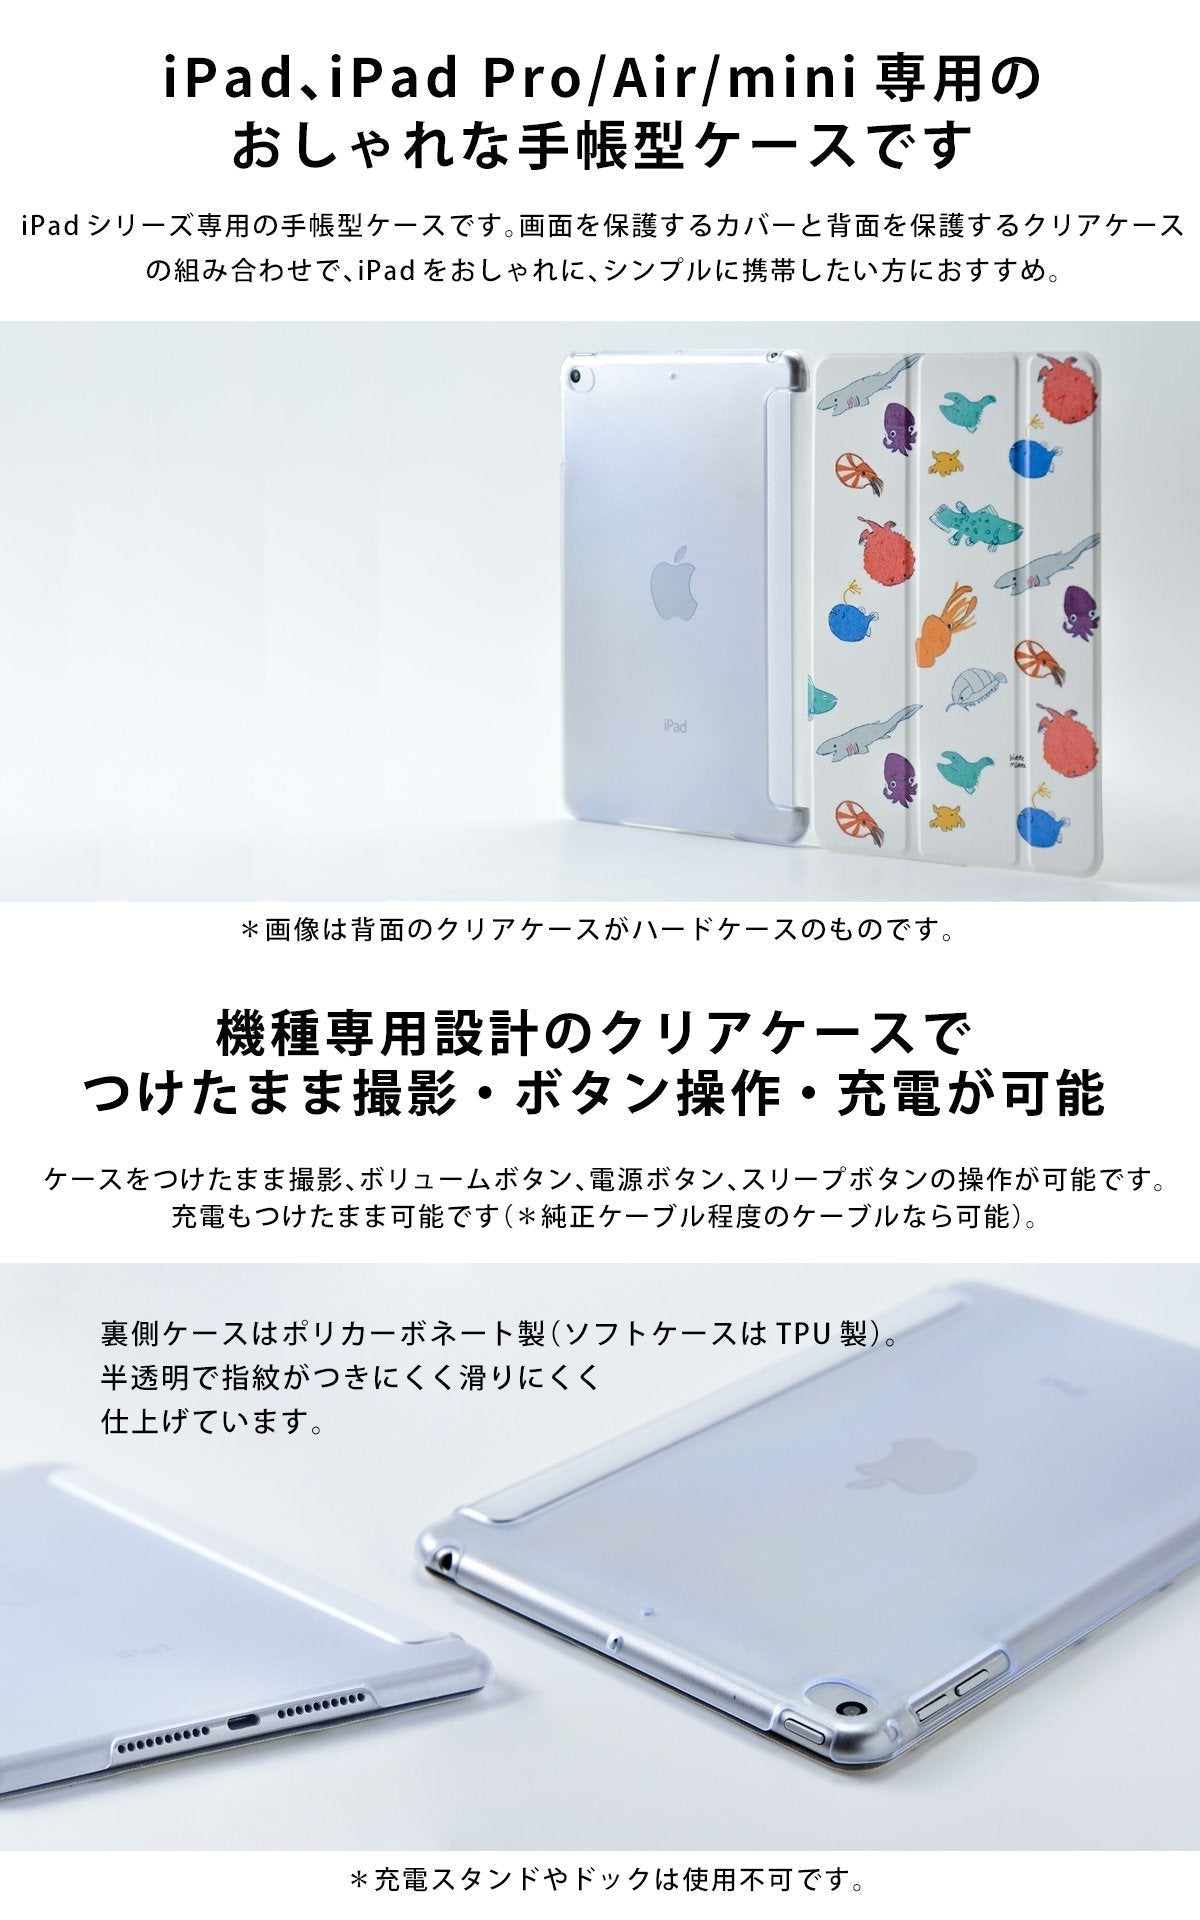 iPad ケース Air 5/4/3/2/1 10.9インチ iPadAir5 iPadケース おしゃれ かわいい 夏 ねこ 猫 名入れ